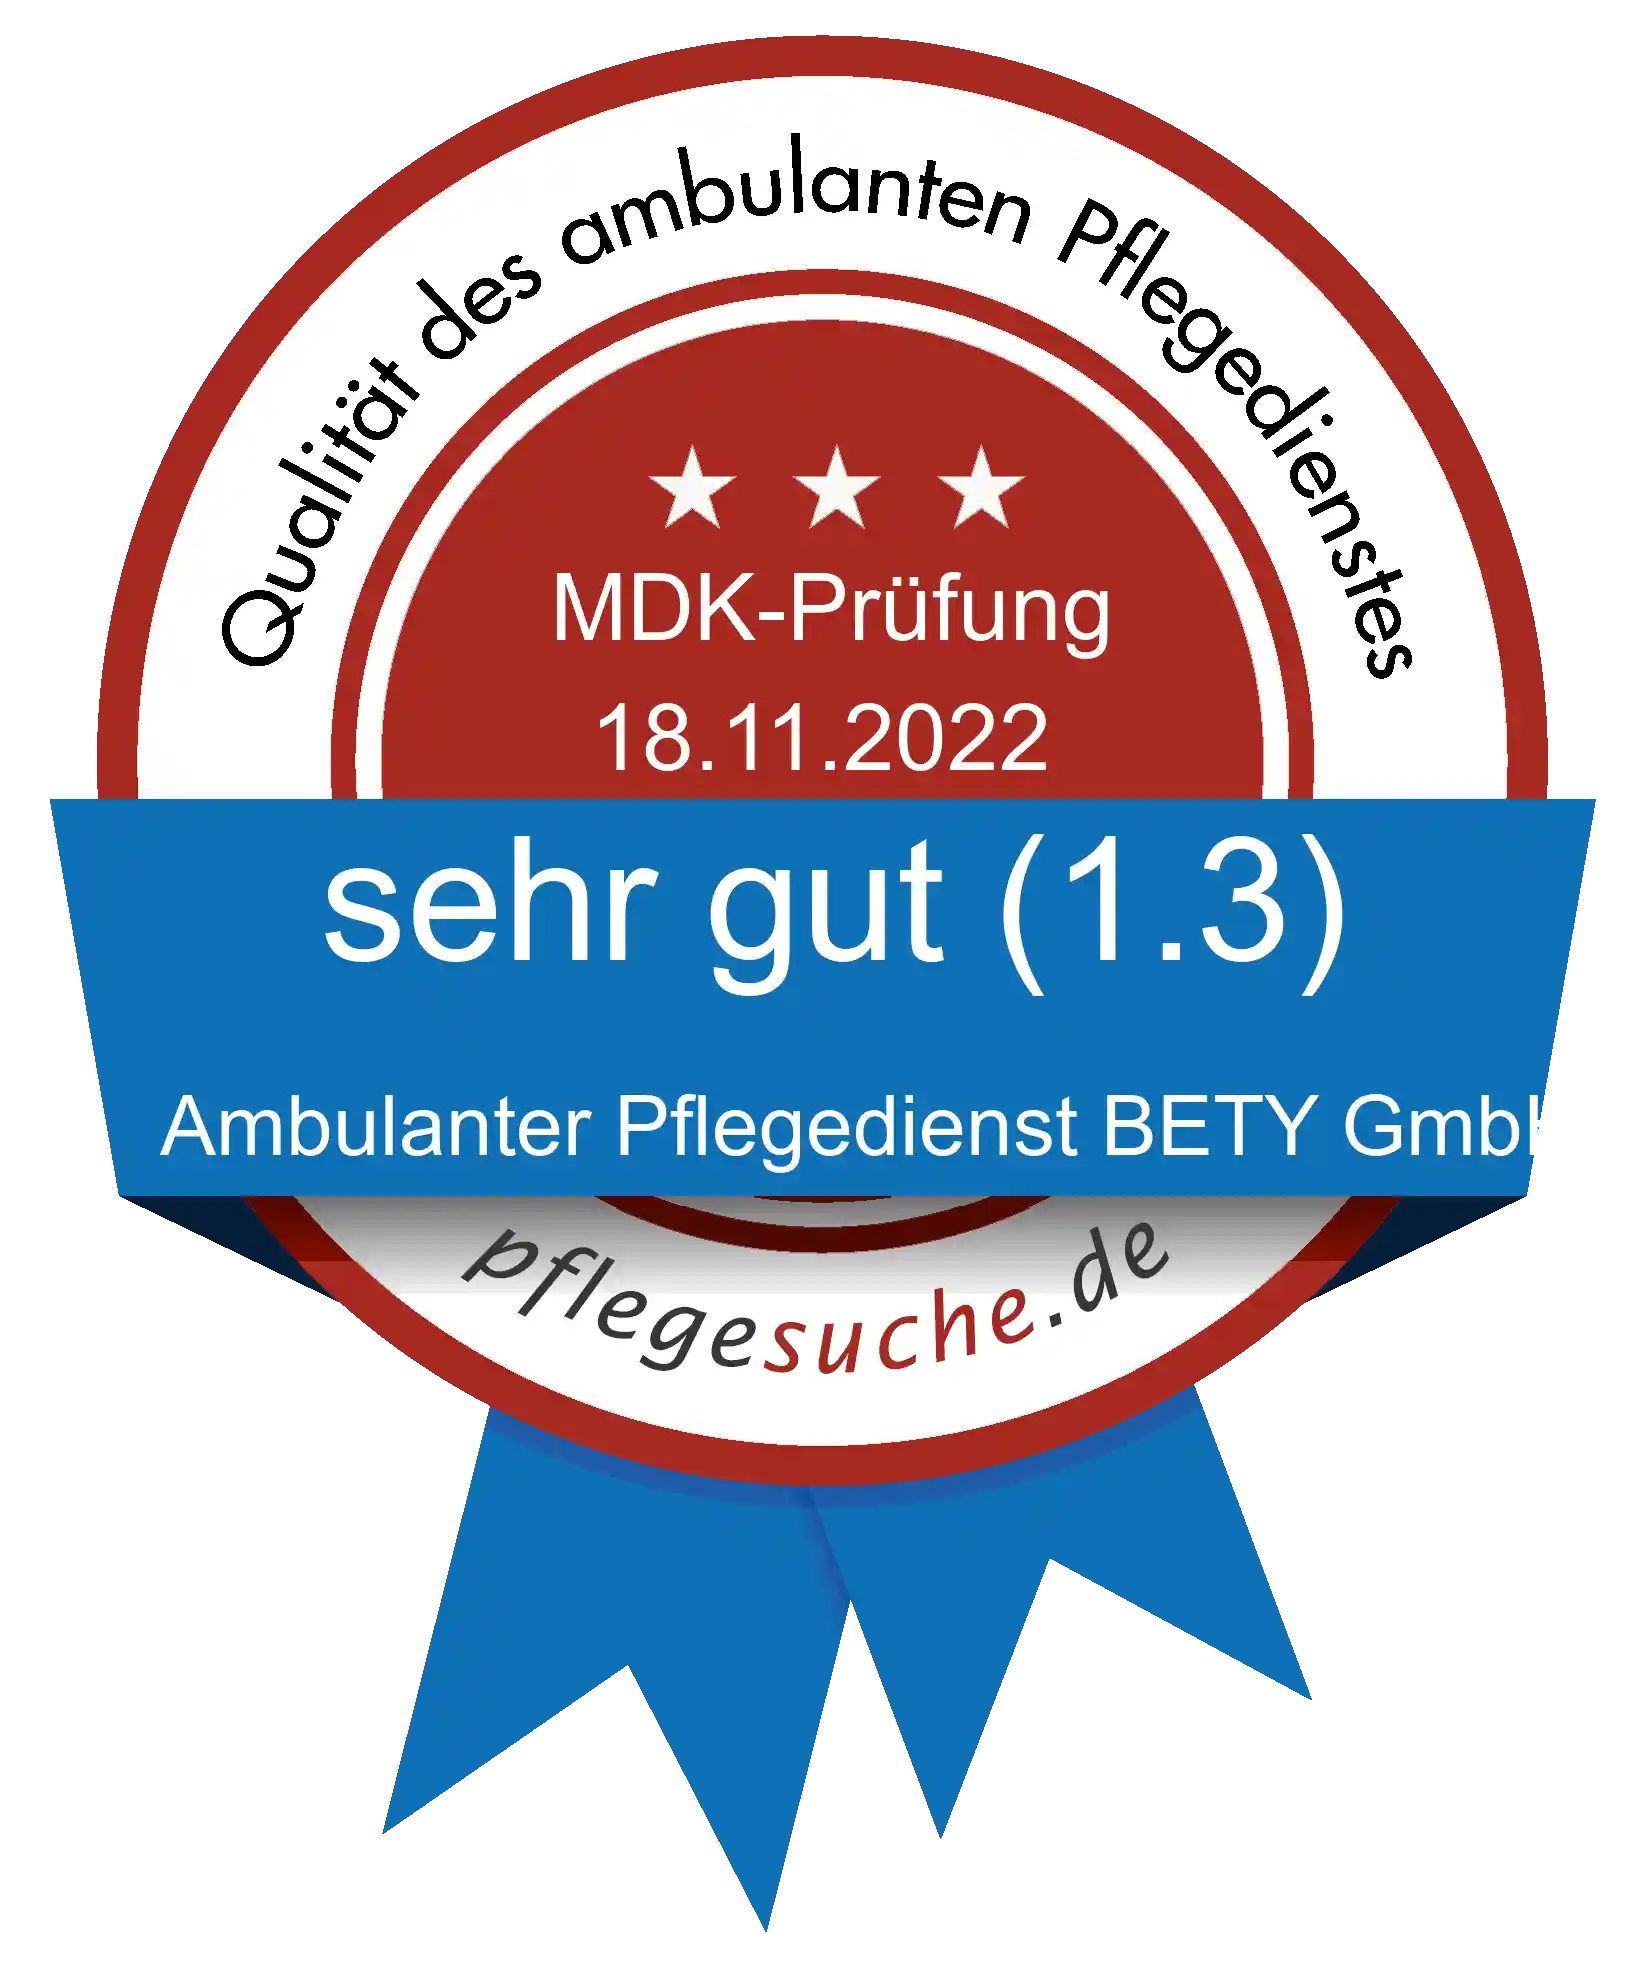 Siegel Benotung: Ambulanter Pflegedienst BETY GmbH